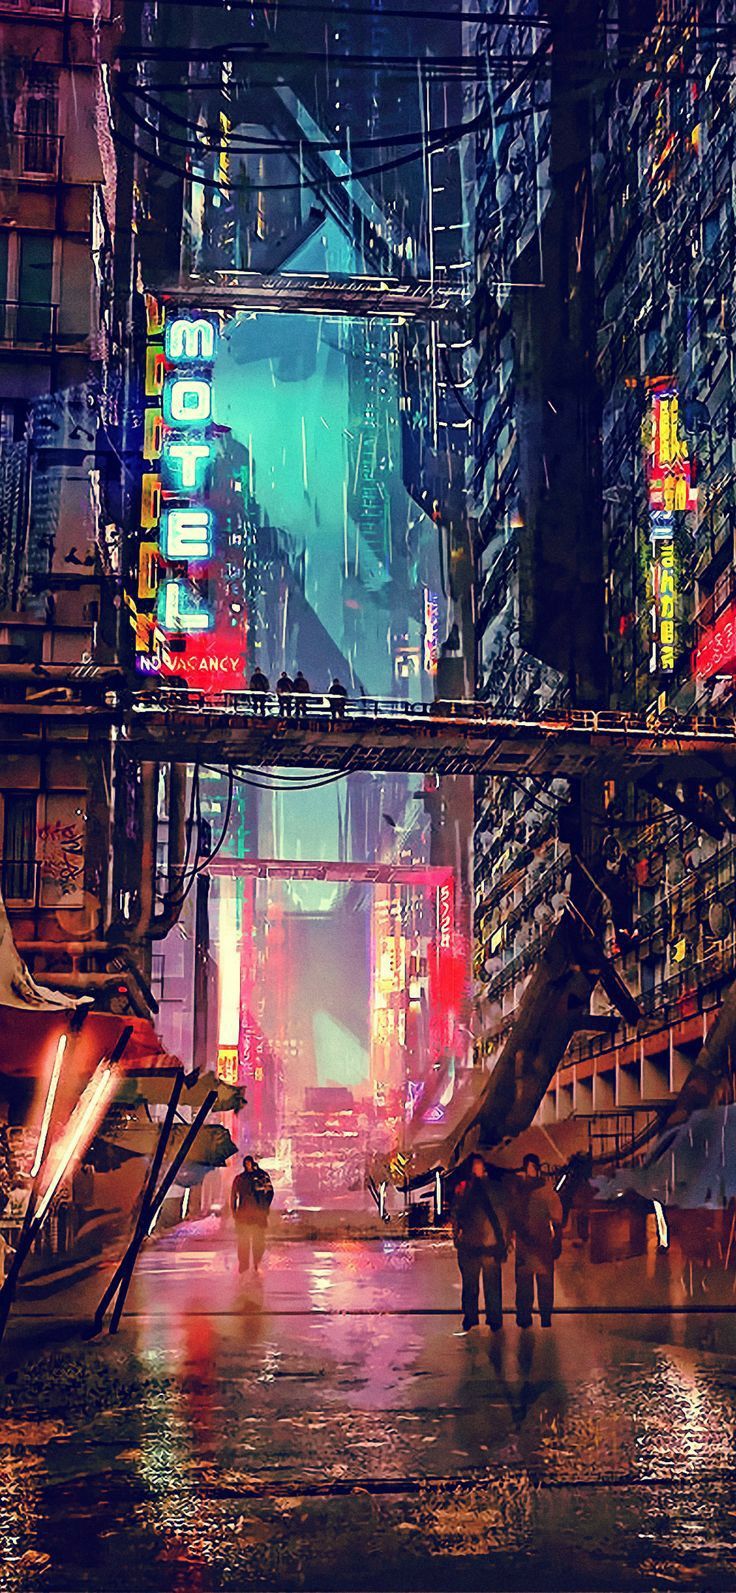 cyberpunk themed wallpaper